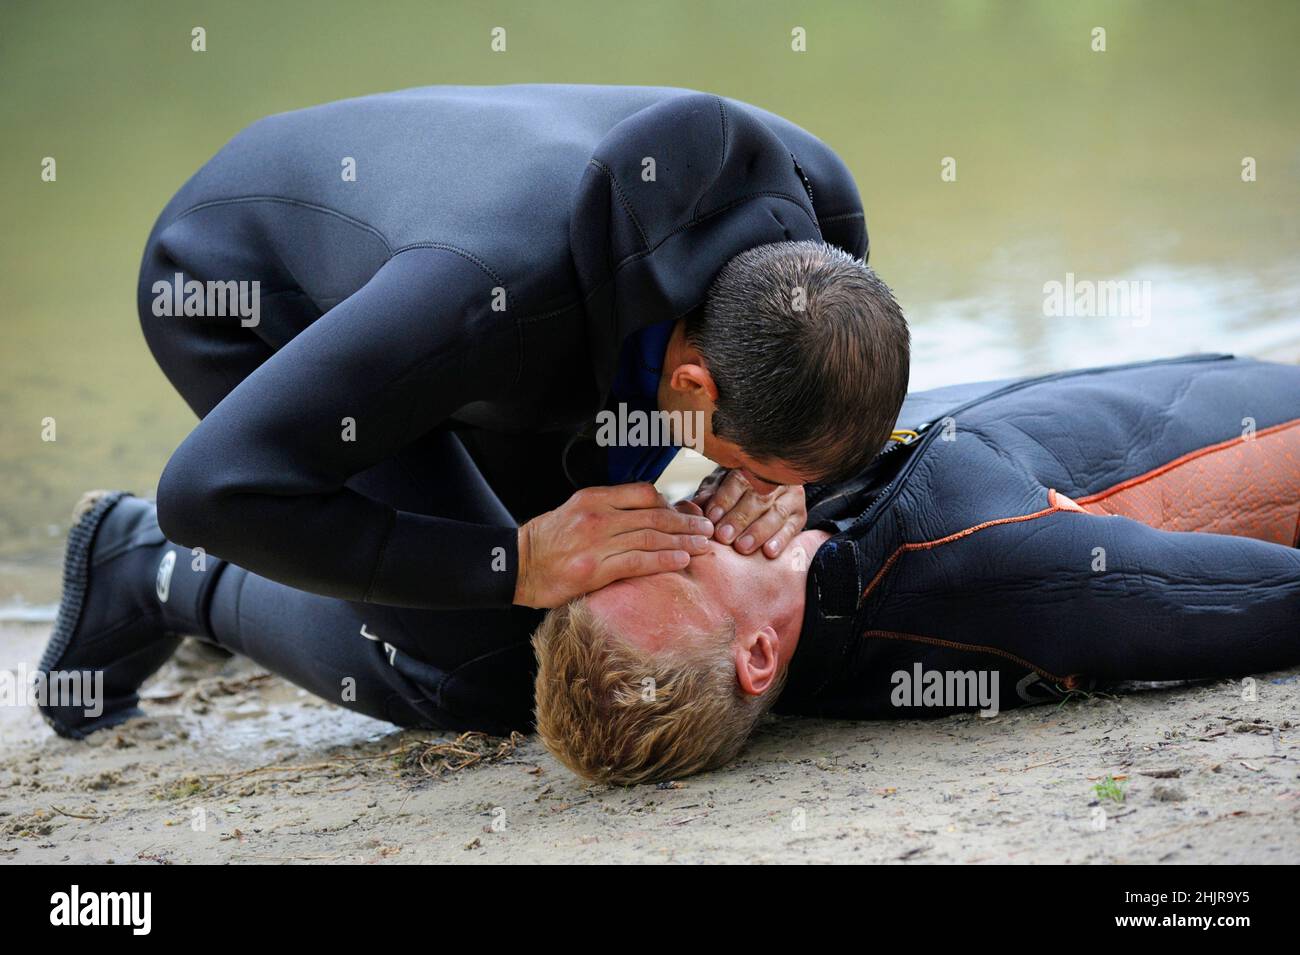 Künstliche Beatmung. Rettungsschwimmer, der Mund-zu-Mund-Beatmung ertrinkt. Stockfoto